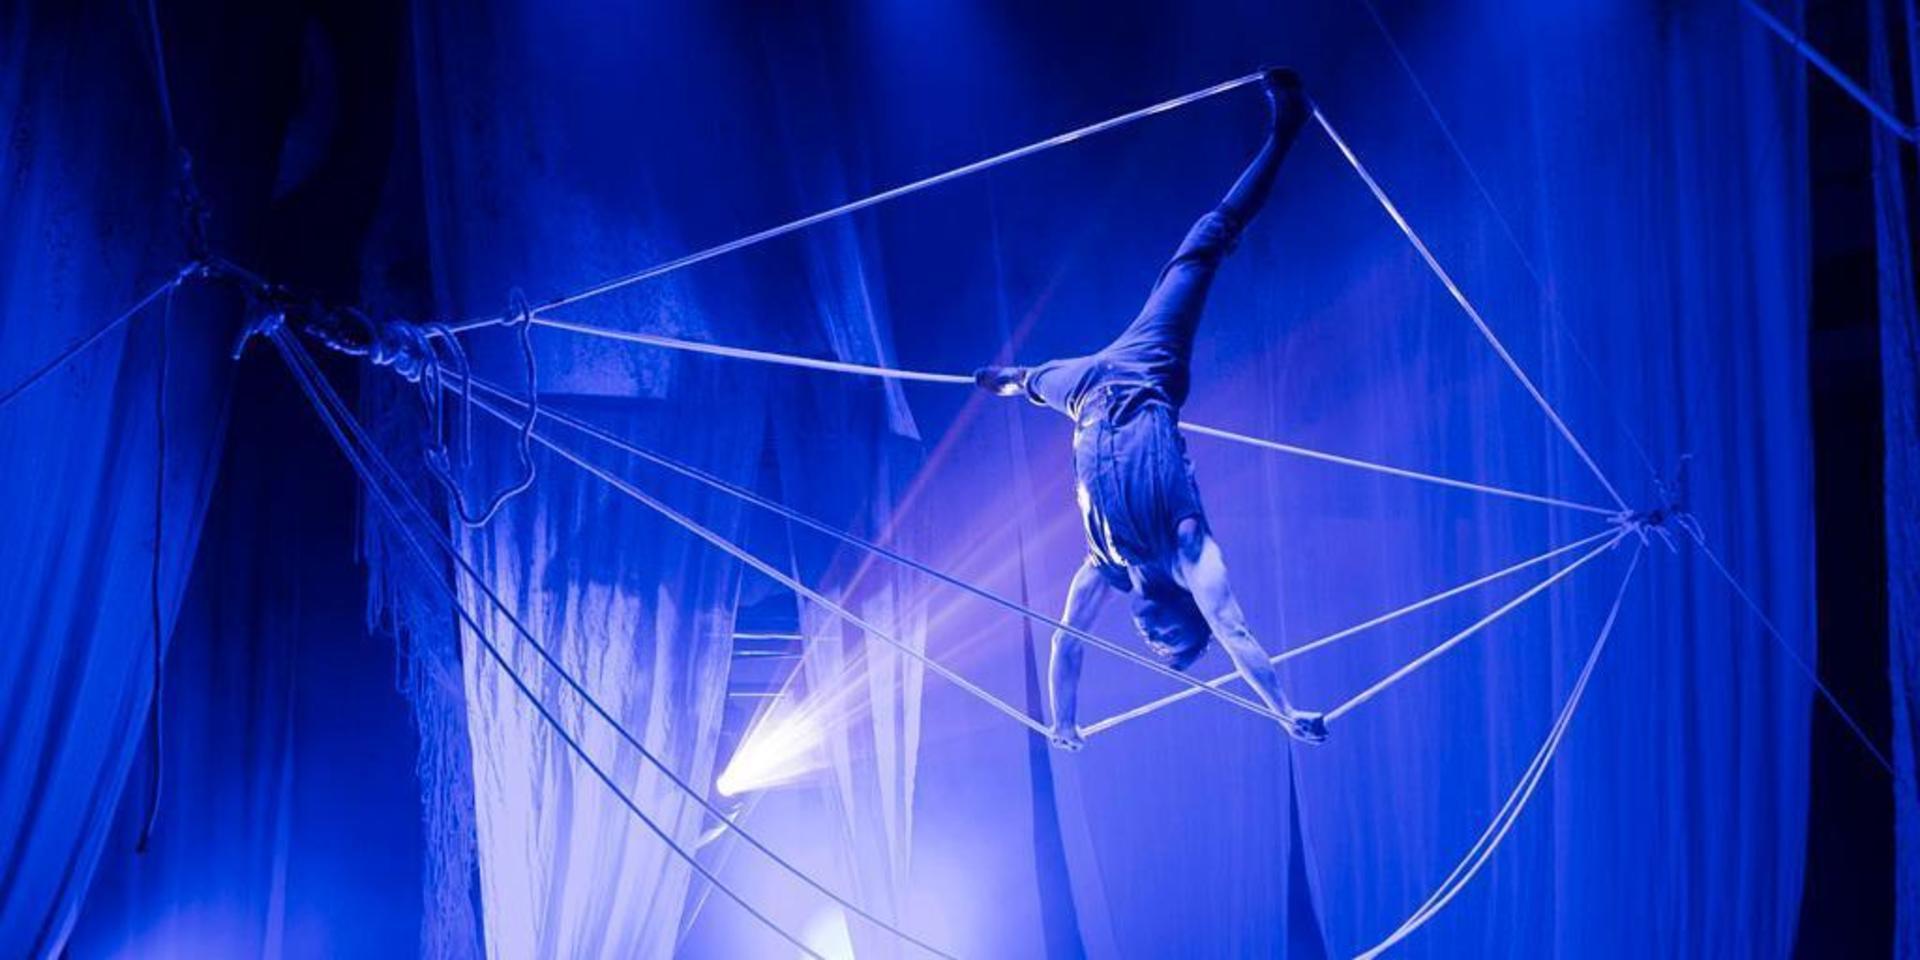 Cirkus Cirkörs föreställning &quot;Knitting Peace&quot; är en av de akter som visades på Storan åren 2012-2013.